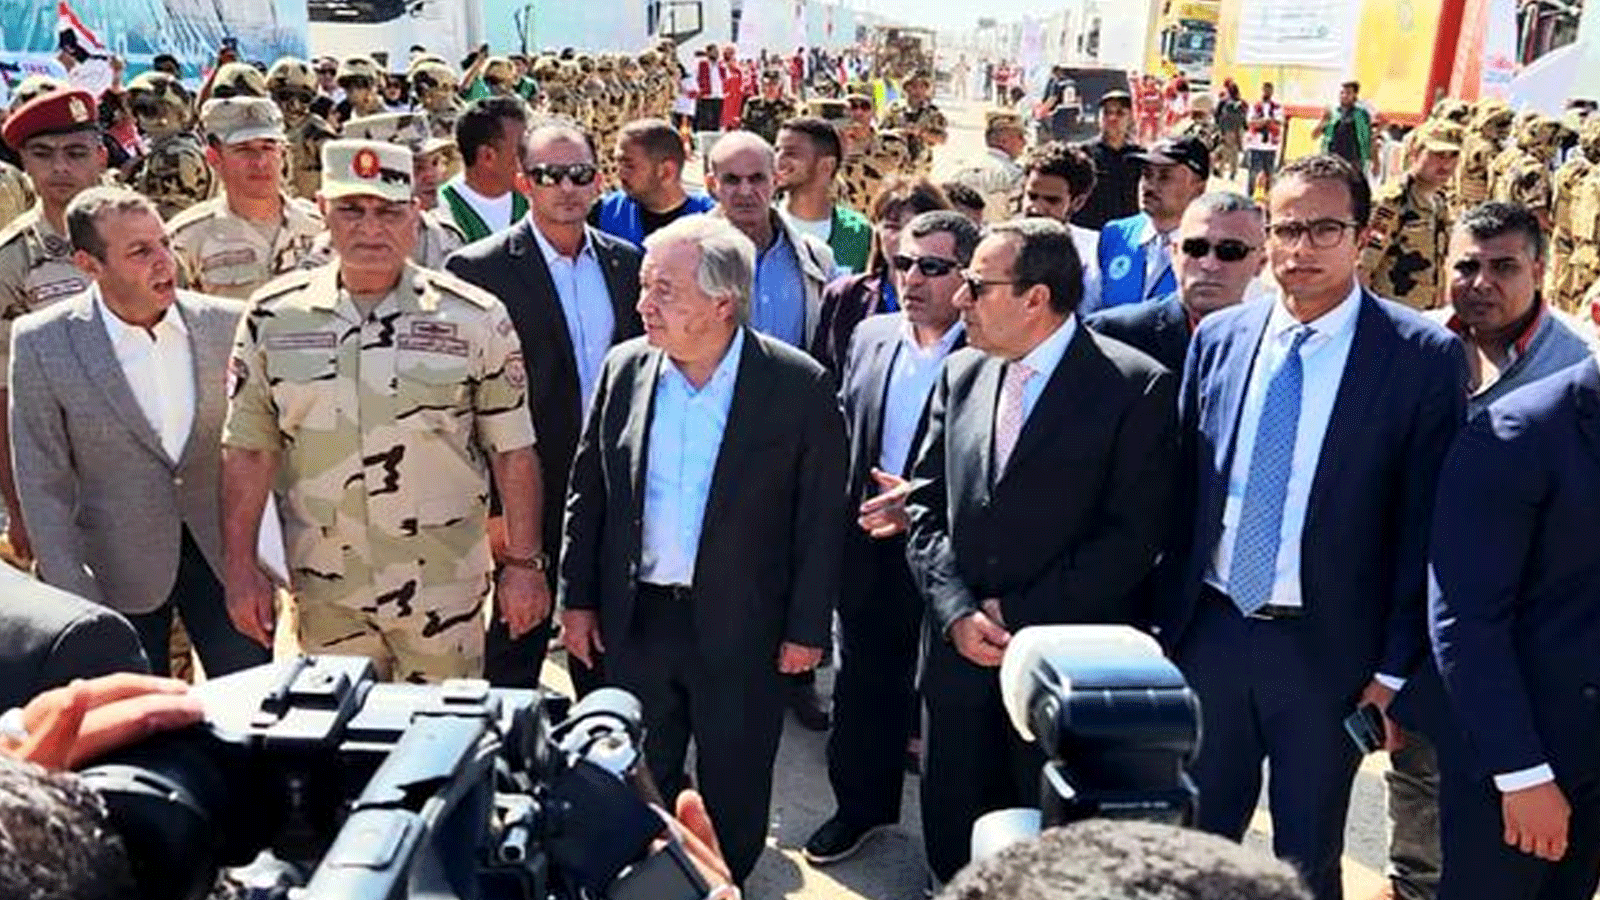 الأمين العام للأمم المتحدة أنطونيو غوتيريش يتفقد المساعدات مع الرئيس المصري في معبر رفح